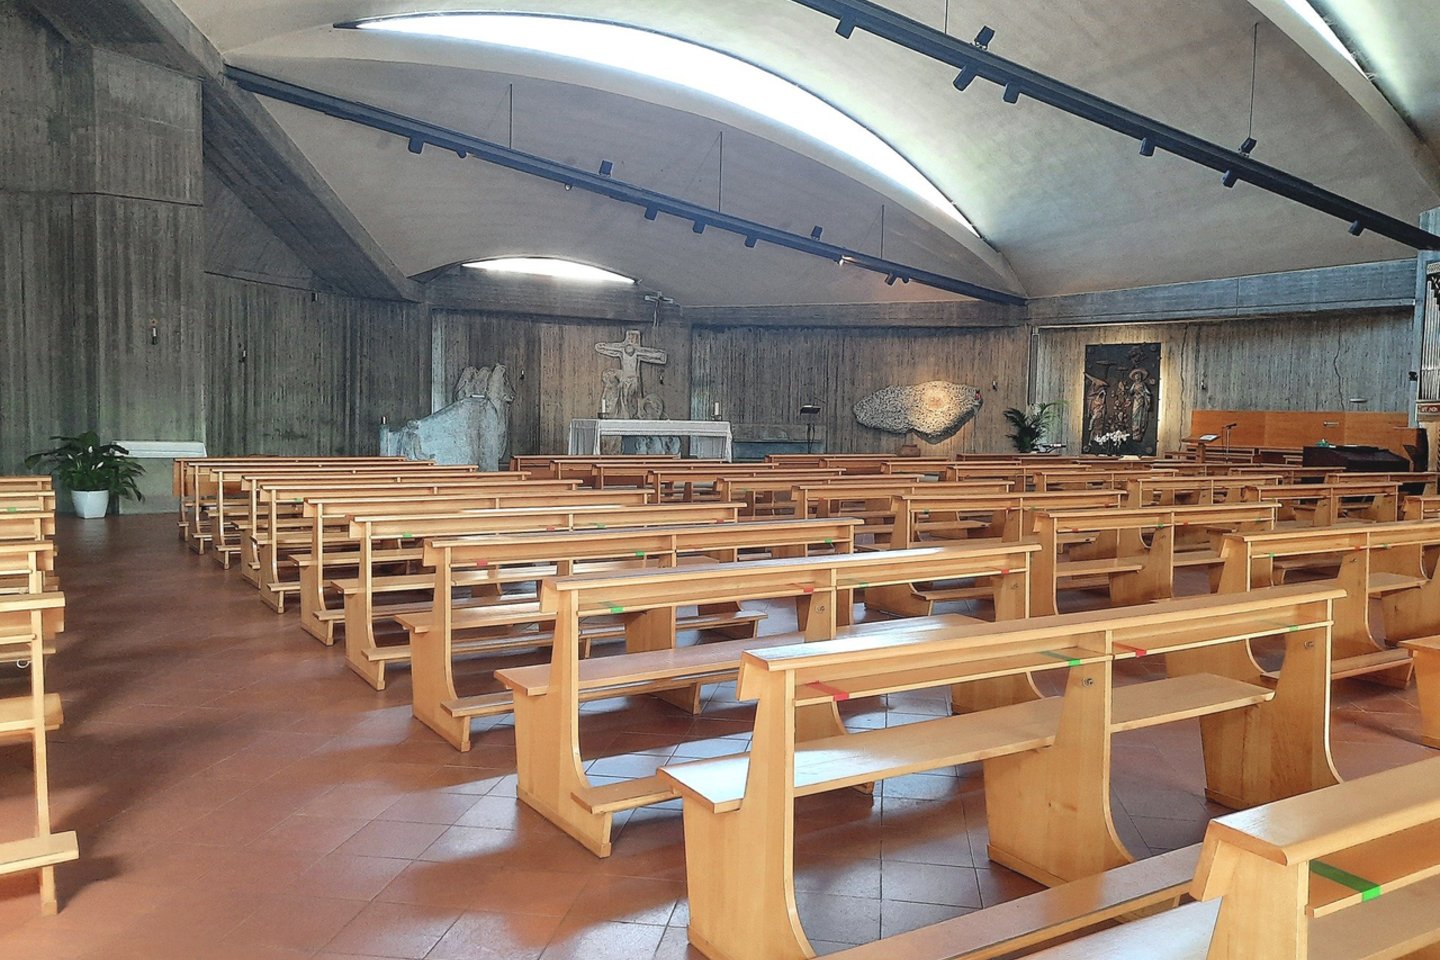 Prato bažnyčioje kunigavęs F.Spagnesi savo reikmėms pasisavino ir iššvaistė šimtus tūkstančių eurų, buvusių parapijos sąskaitoje ir suaukotų tikinčiųjų.<br>N.Budrytės ir „Diocesi di Prato“ nuotr.